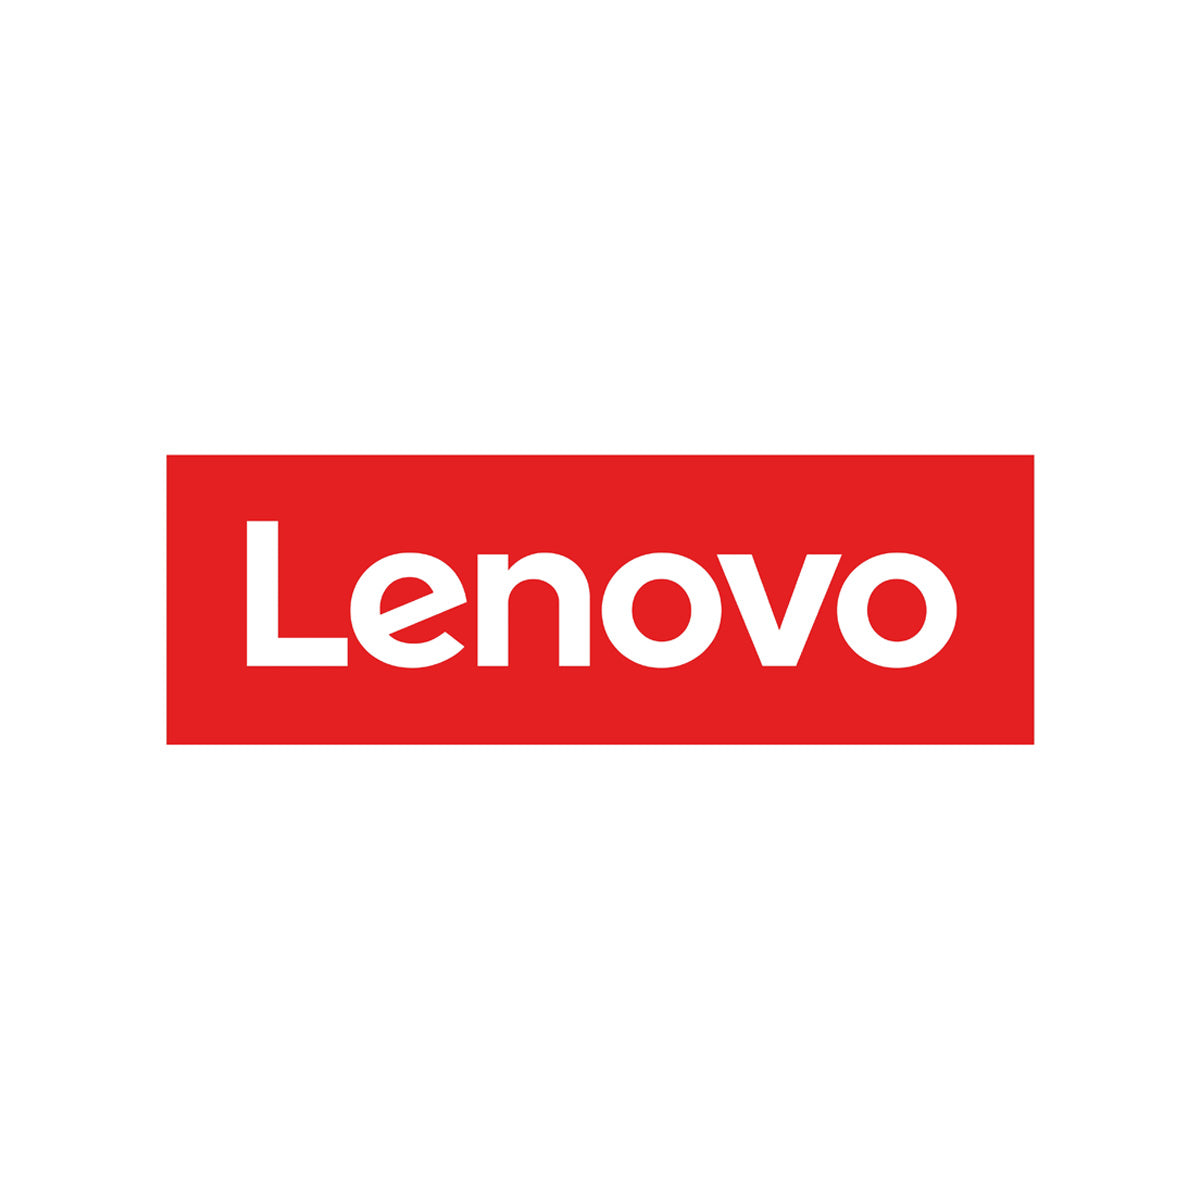 Lenovo Refurbished Combo Computers & Setups